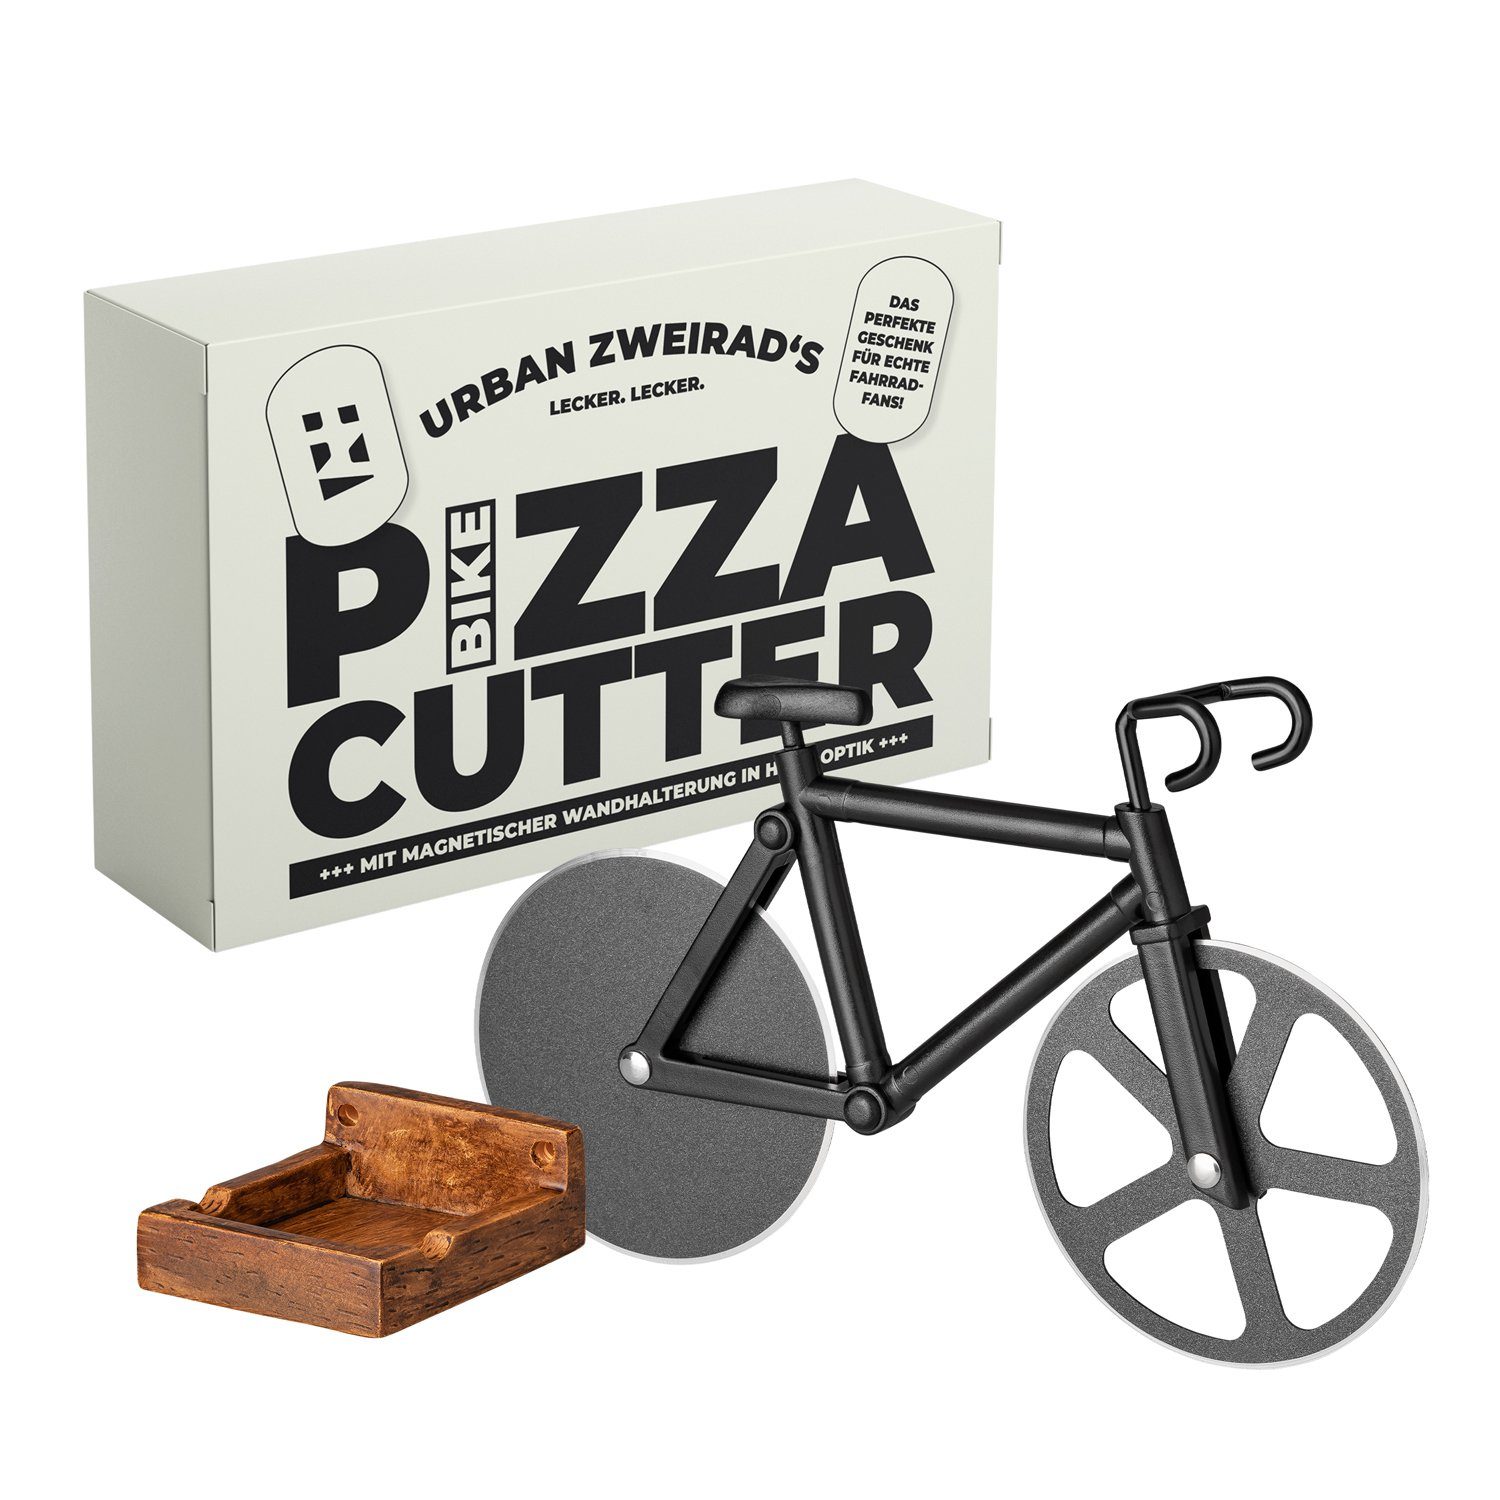 URBAN ZWEIRAD Pizzaschneider Bike Fahrrad Pizza Schneider mit magnetischer Halterung & Bodenständer | Pizzaschneider